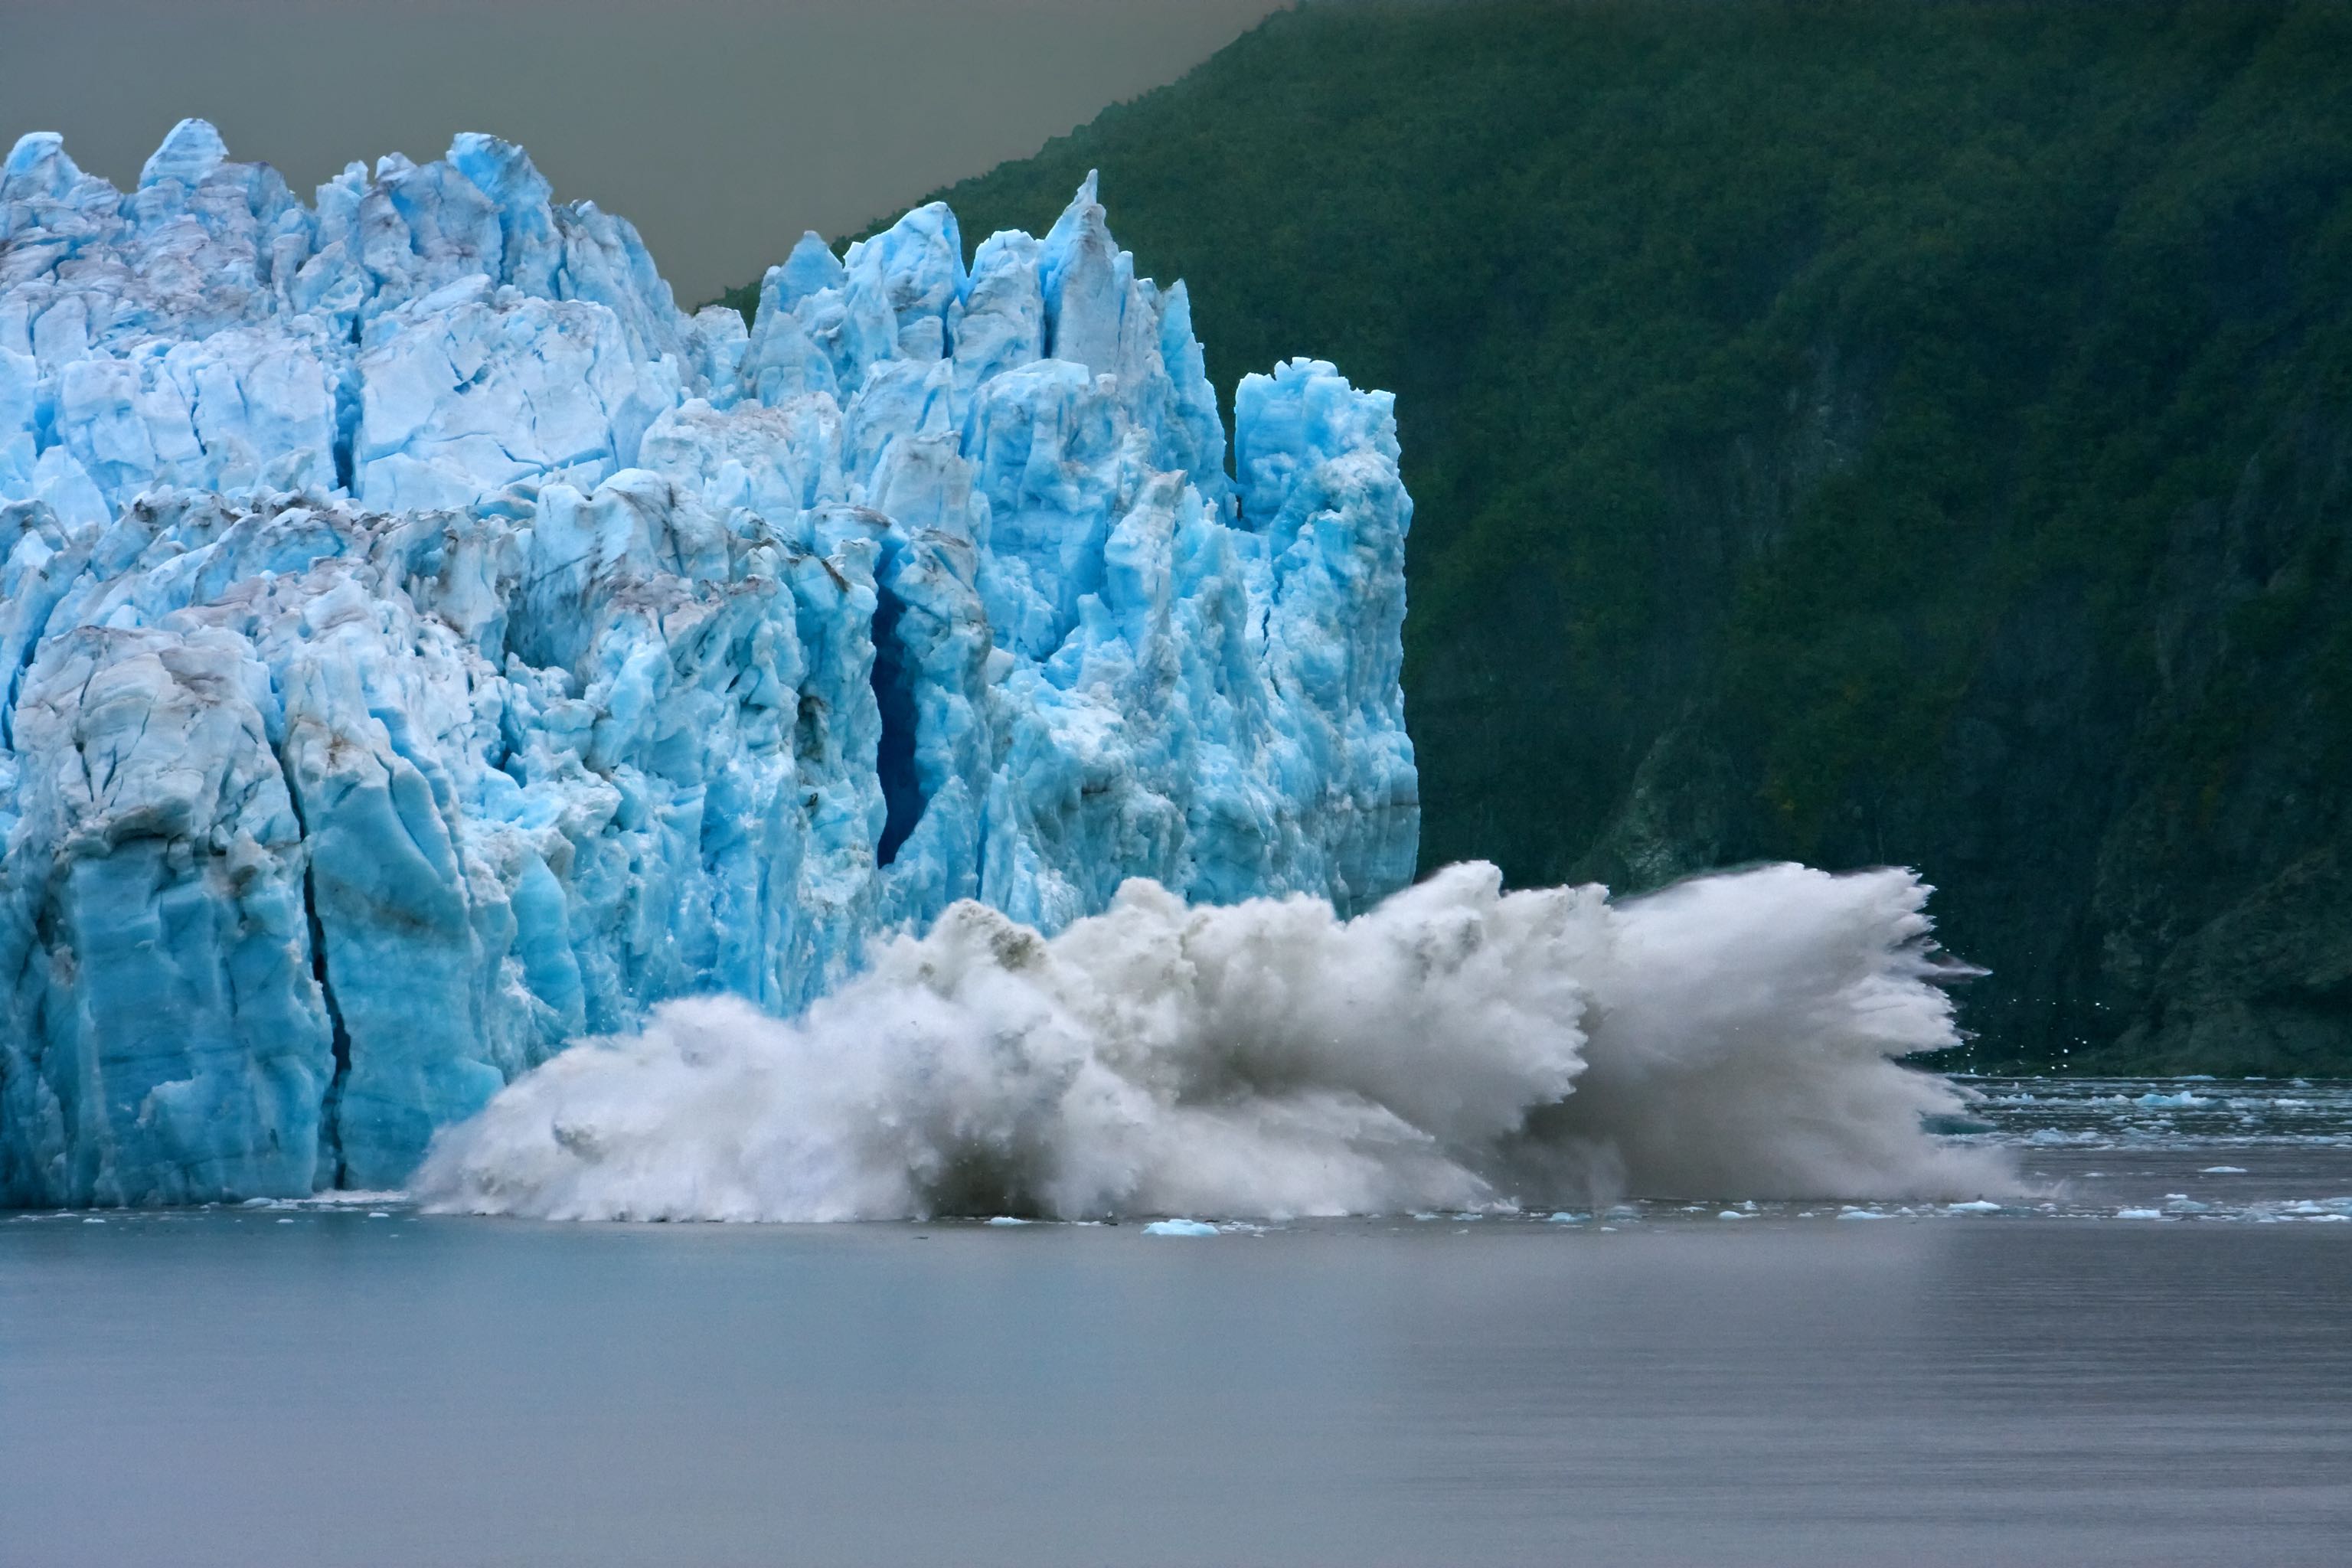 Icy blue Hubbard Glacier calving